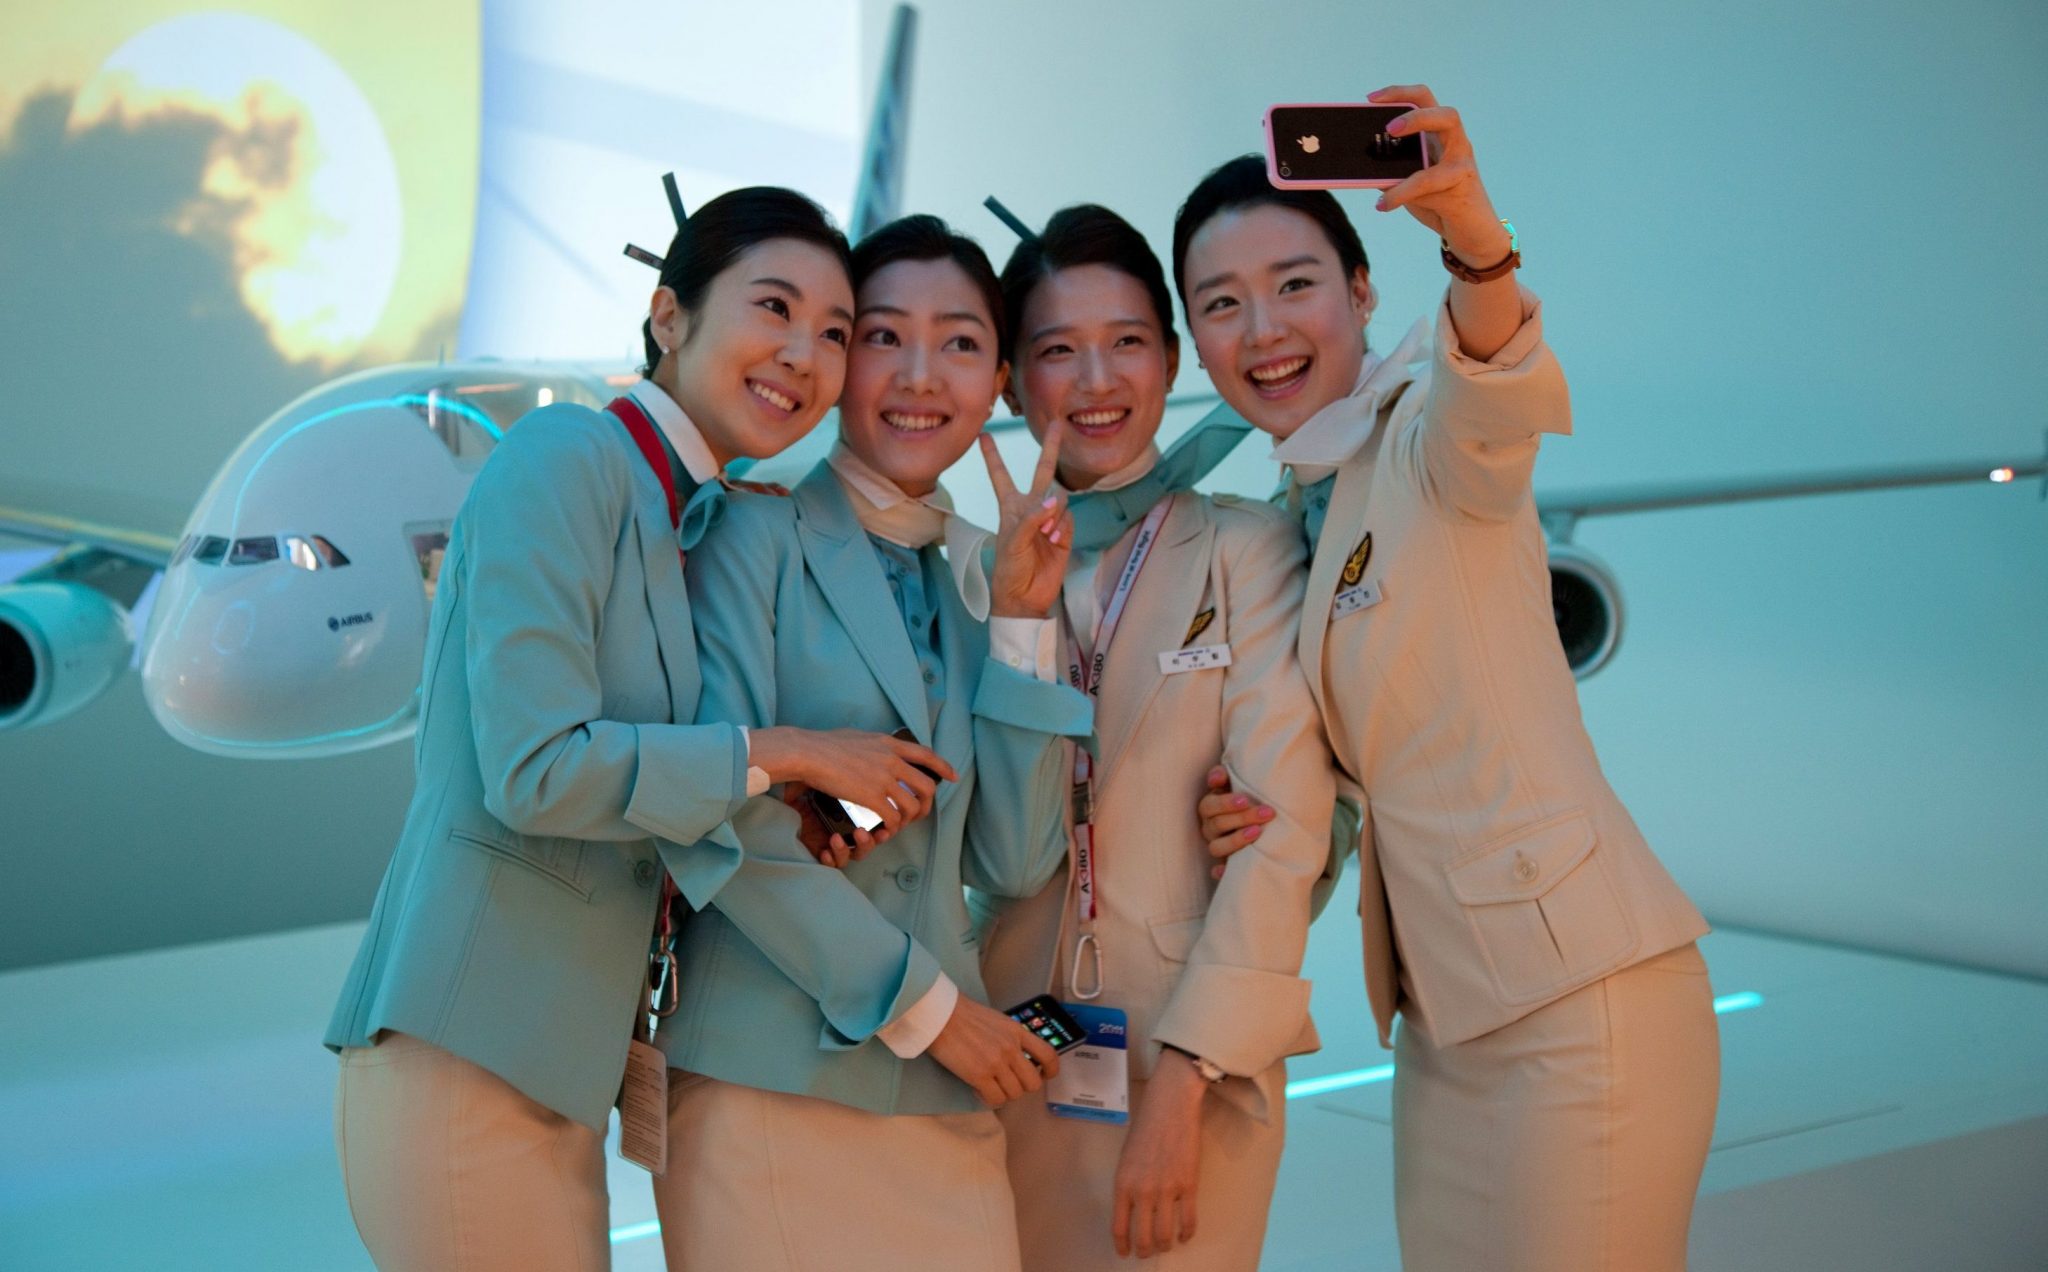 a group of women in uniform taking a selfie